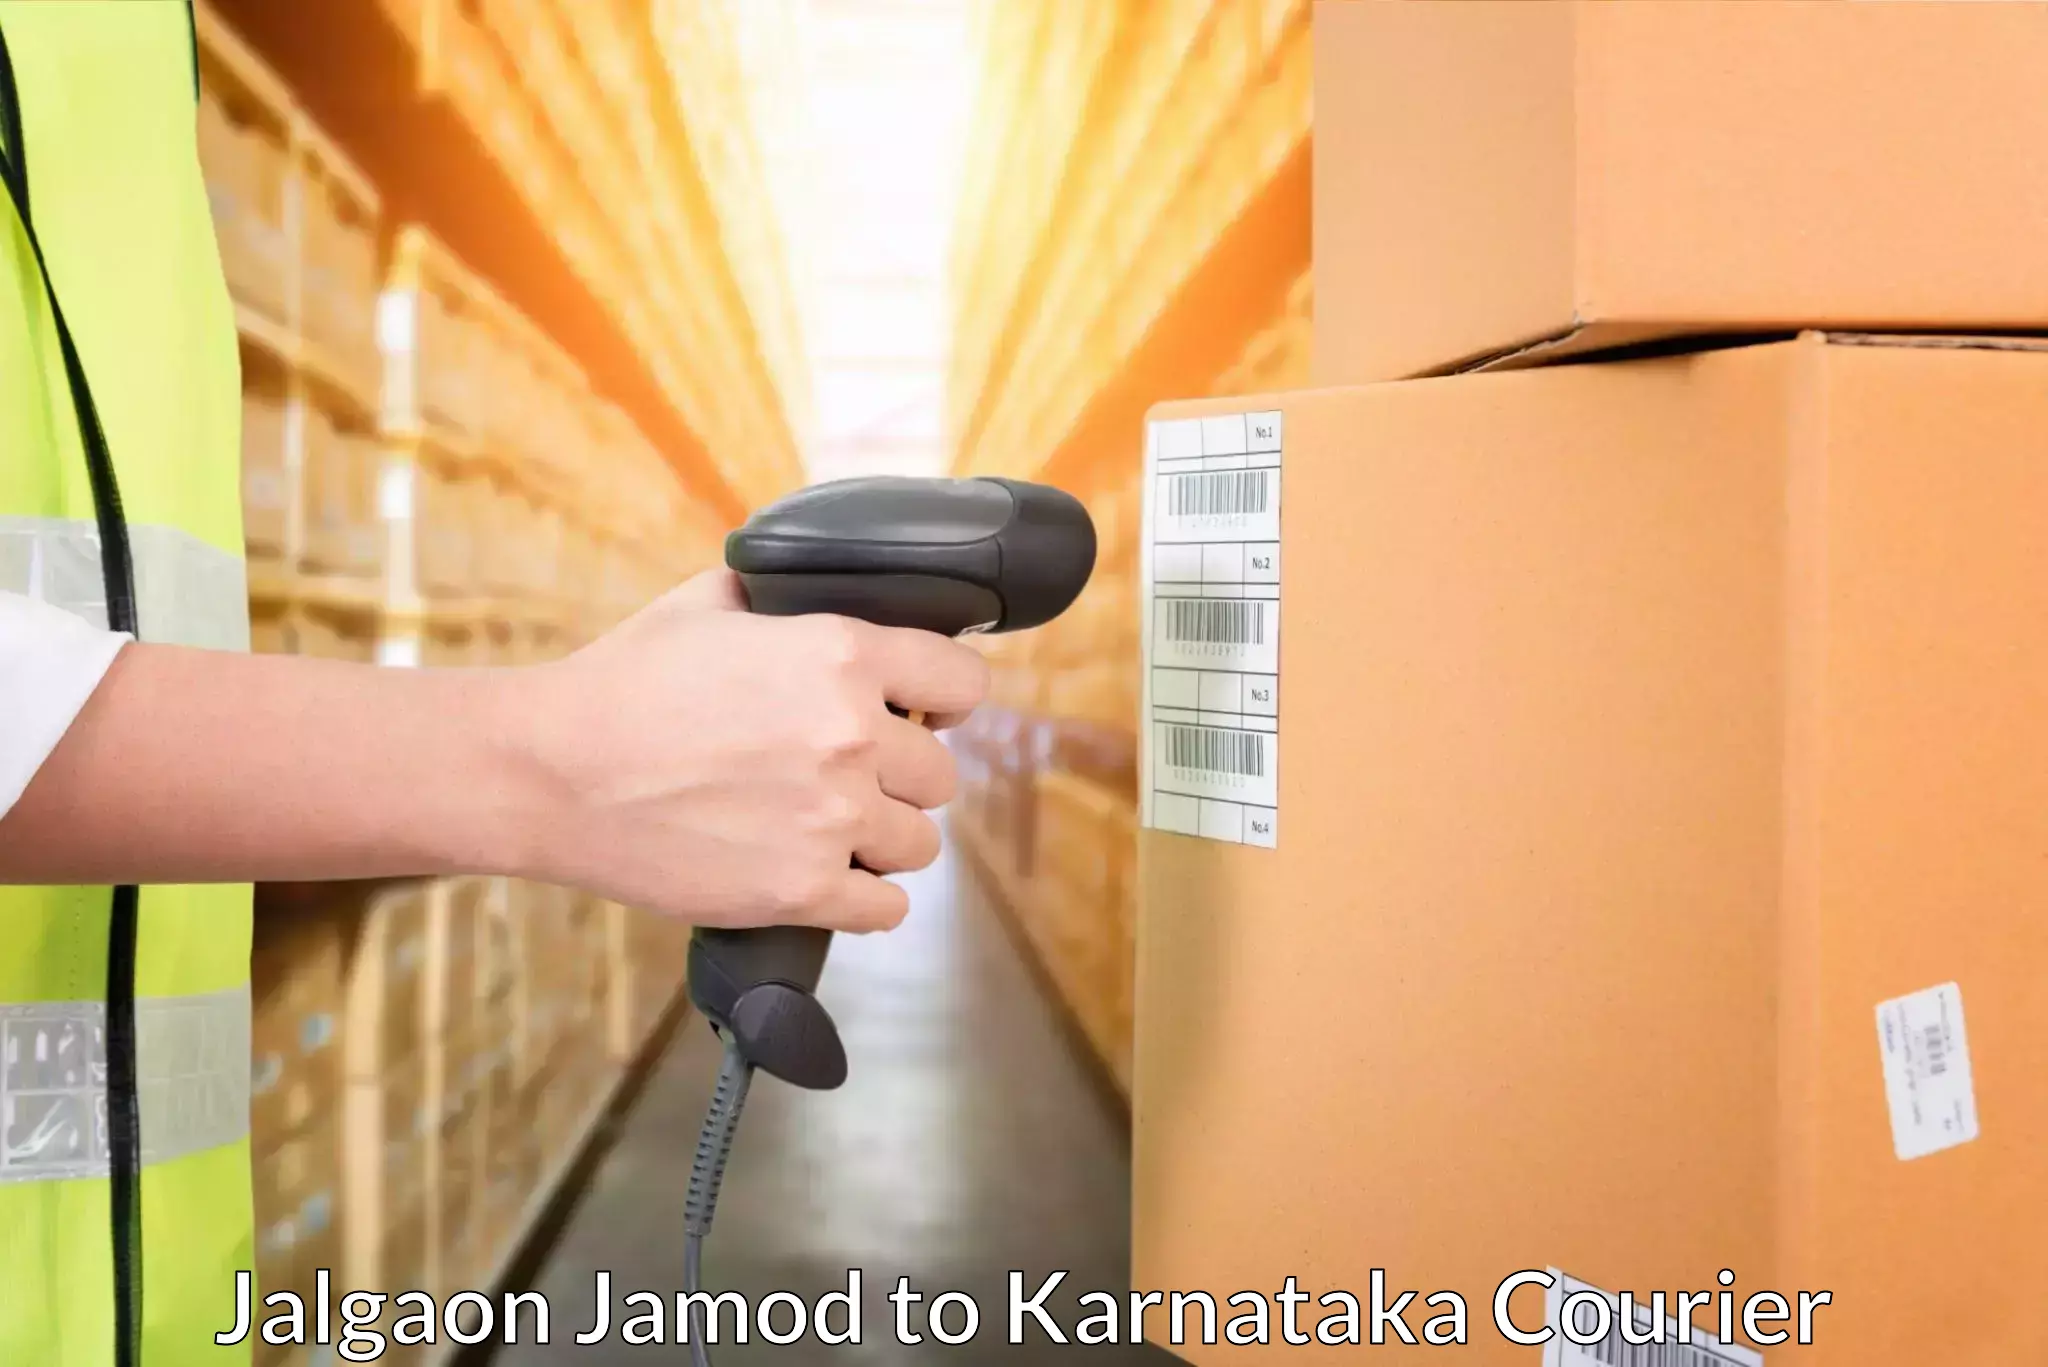 Express postal services Jalgaon Jamod to Karnataka